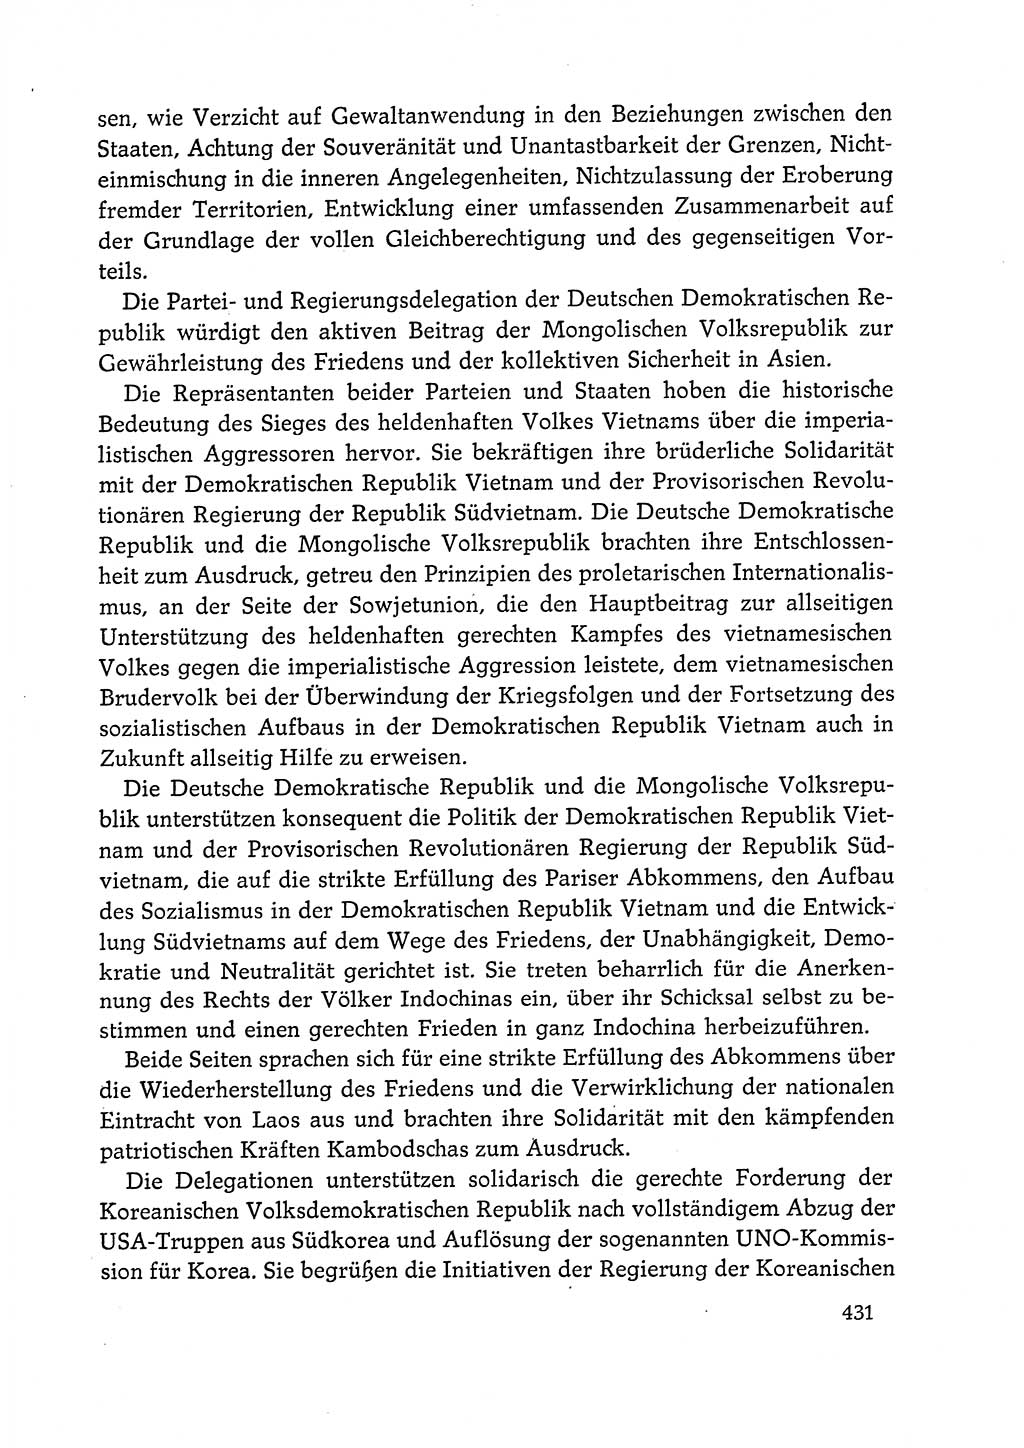 Dokumente der Sozialistischen Einheitspartei Deutschlands (SED) [Deutsche Demokratische Republik (DDR)] 1972-1973, Seite 431 (Dok. SED DDR 1972-1973, S. 431)